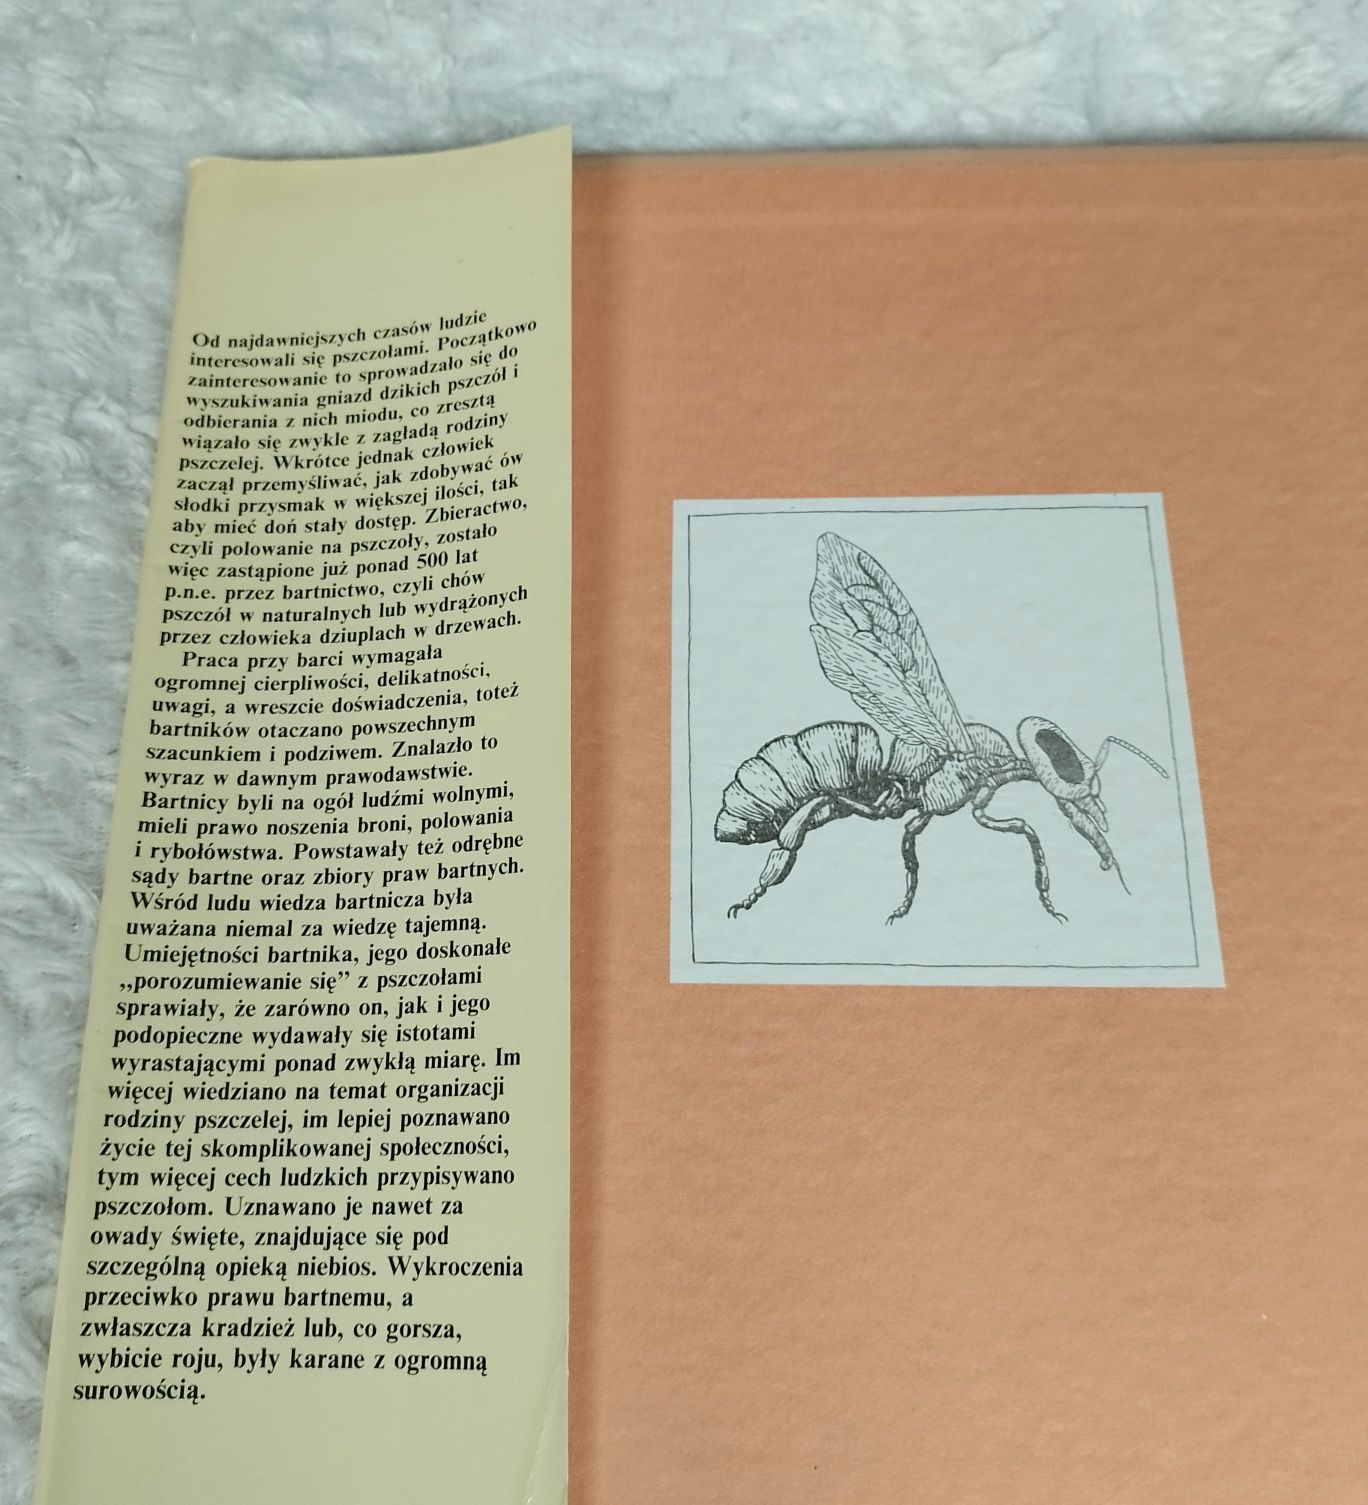 Encyklopedia pszczelarska